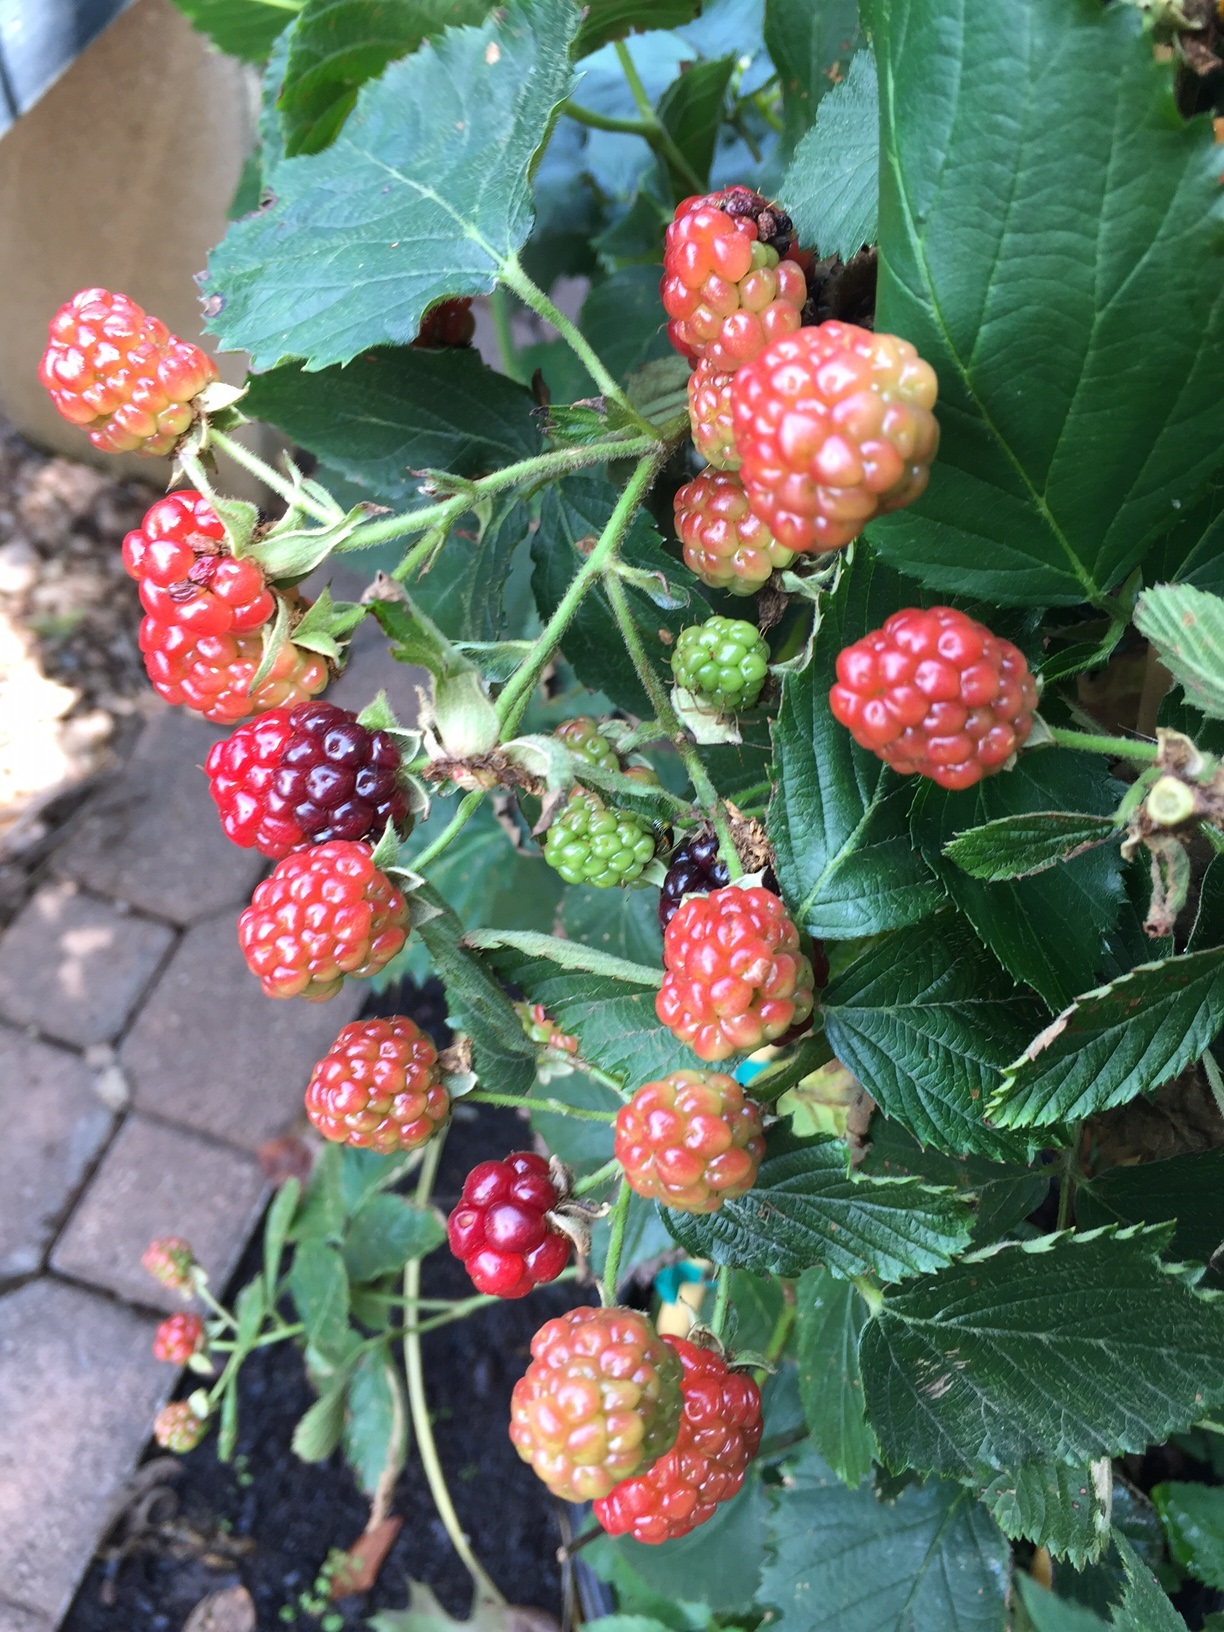 Blackberries: Planting, Growing, and Harvesting Blackberries